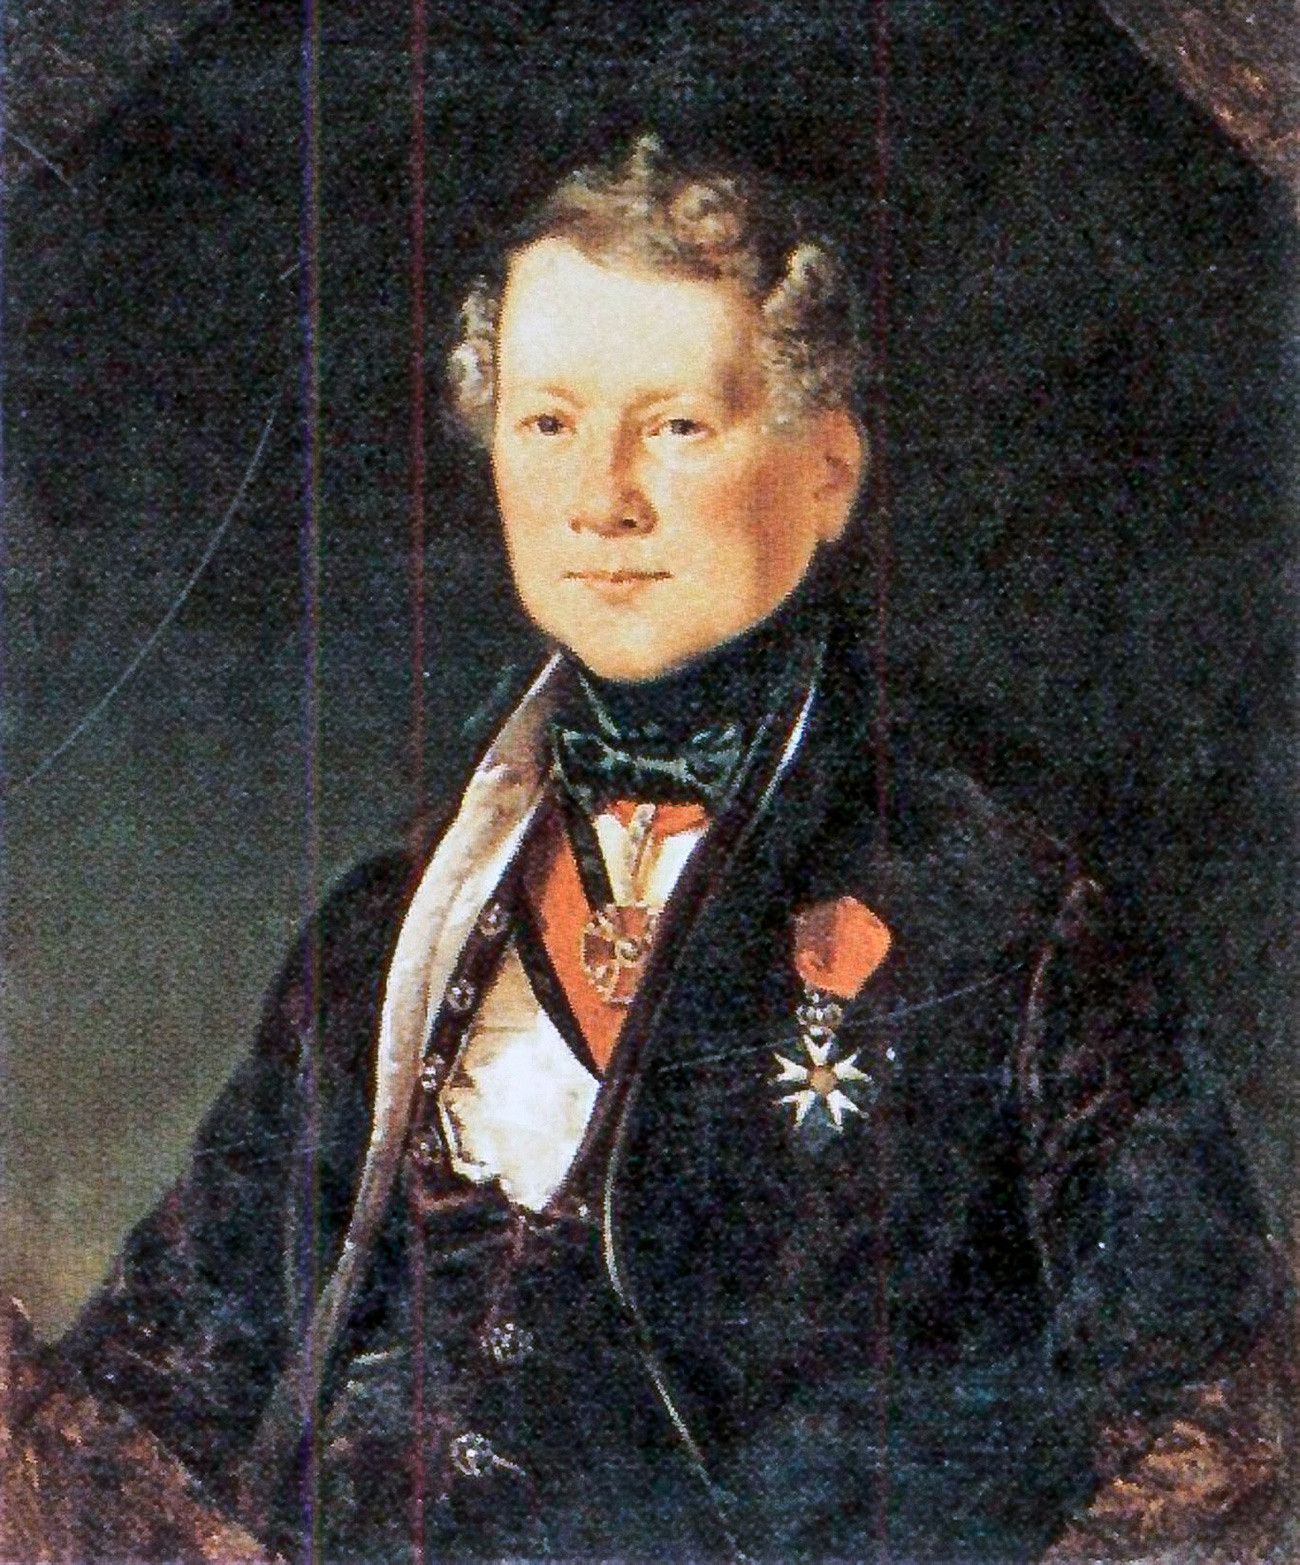 Henri Louis Auguste Ricard de Montferrand, de Eugène Pluchart, 1834

